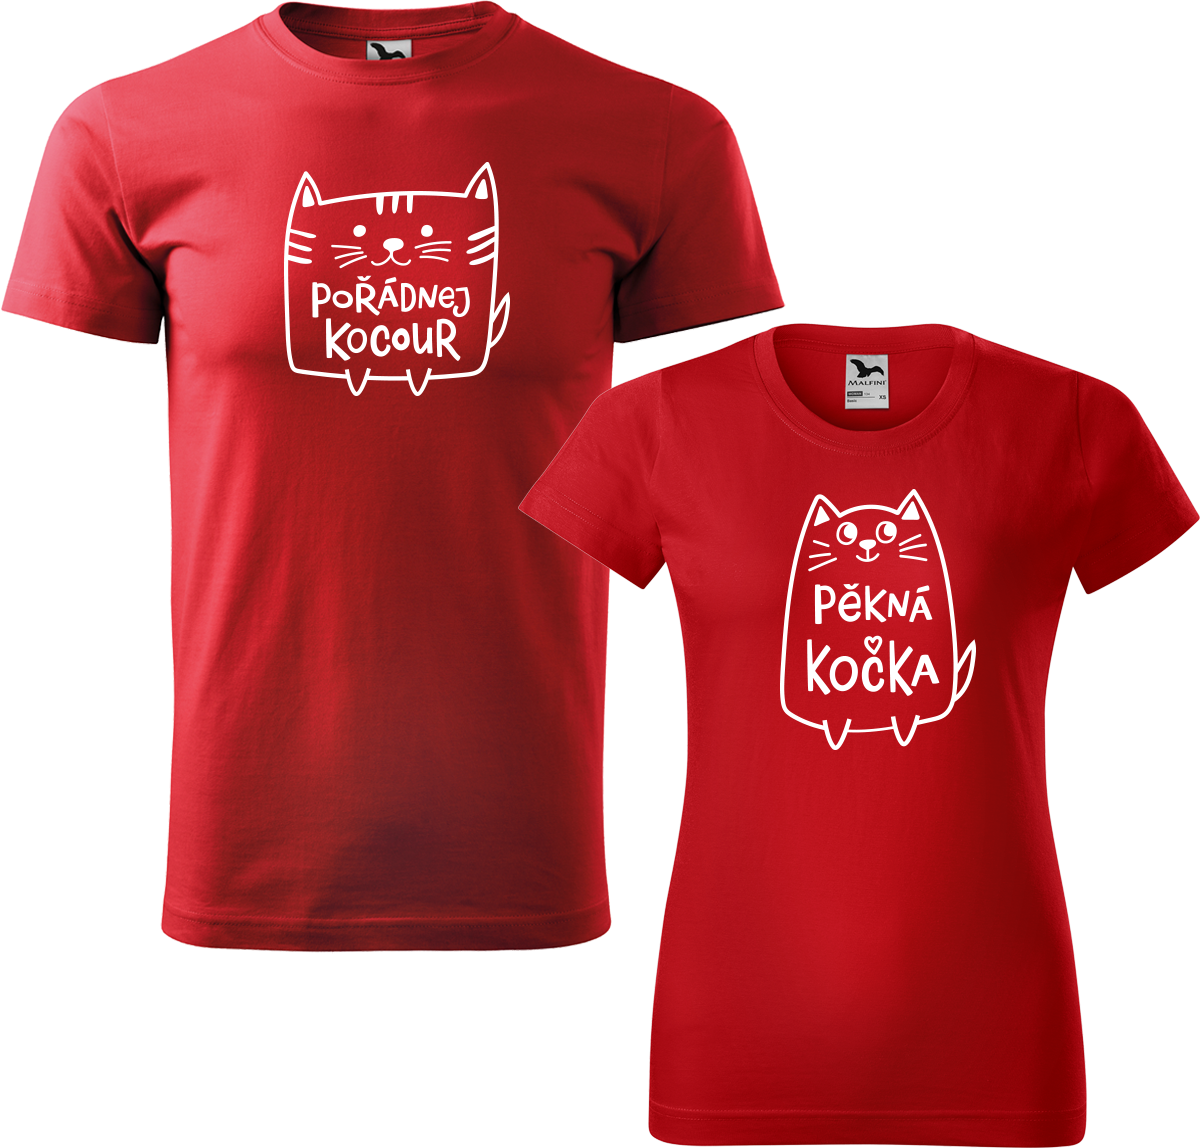 Trička pro páry - Pořádnej kocour a pěkná kočka Barva: Červená (07), Velikost dámské tričko: XL, Velikost pánské tričko: XL